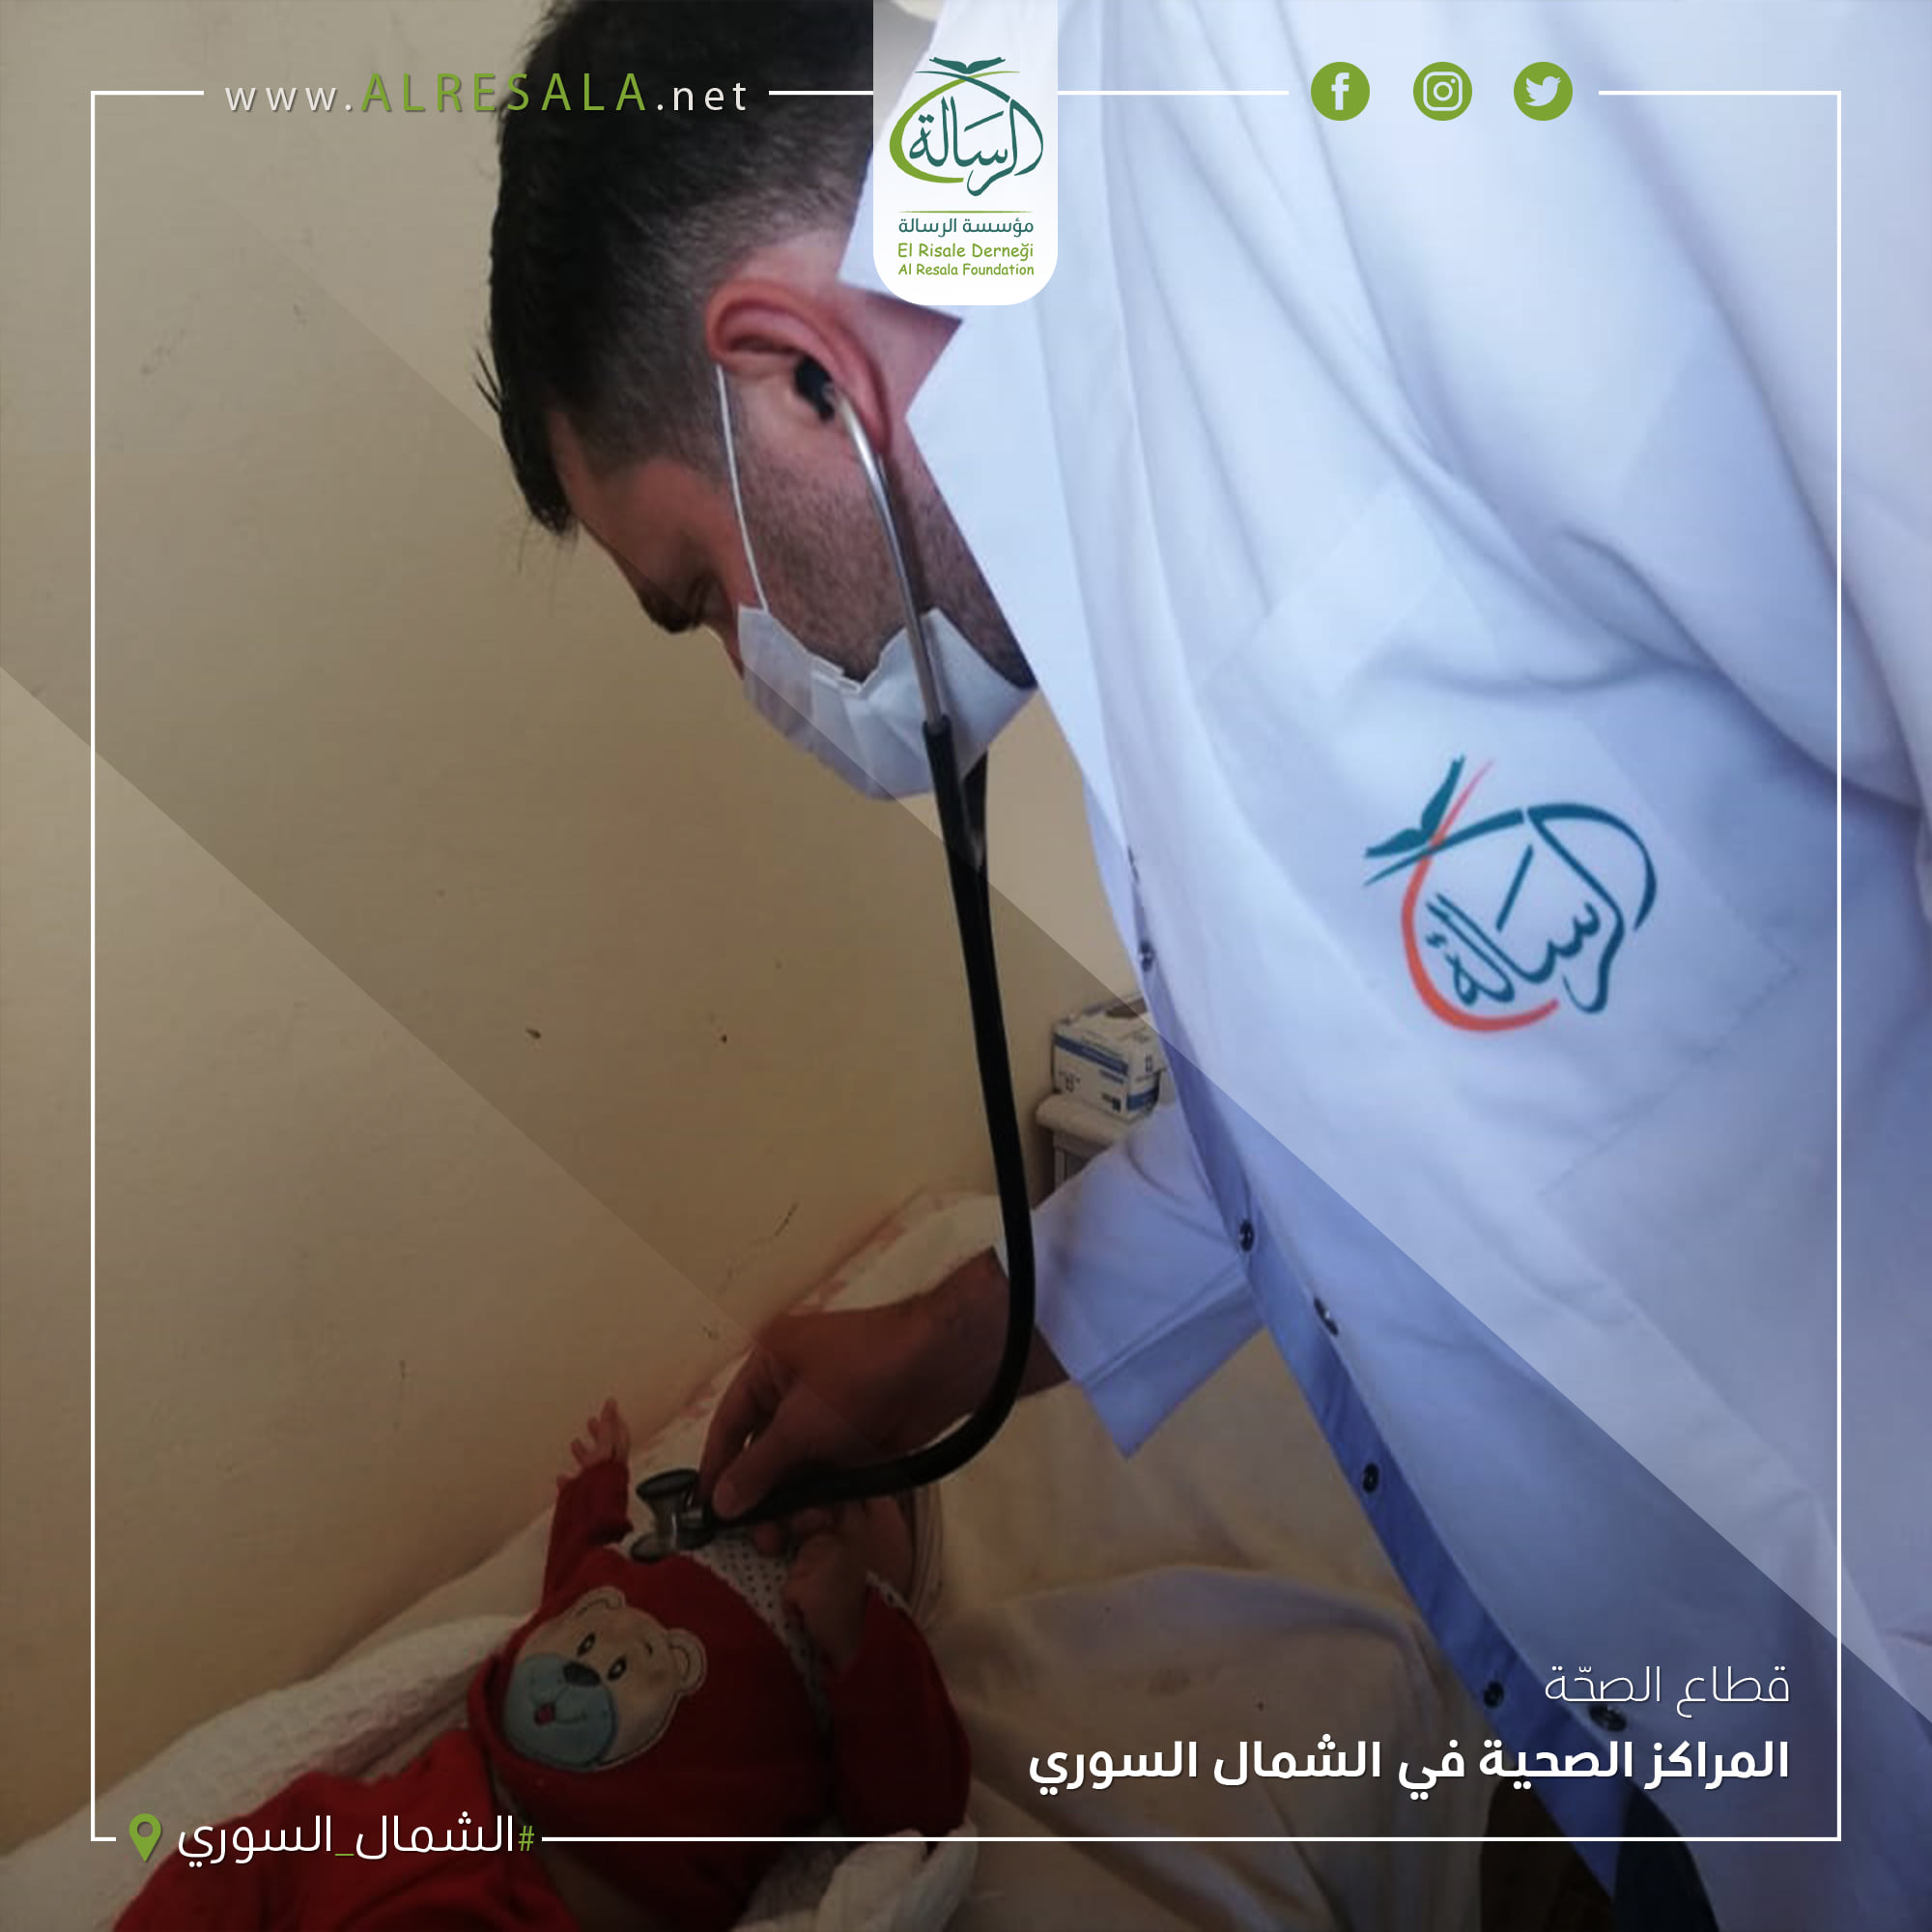 توفير وتعزيز الوصول إلى خدمات الرعاية الصحية الأولية والصحة النفسية في حلب وإدلب من خلال مراكز الرعاية الصحية الأولية والعيادات المتنقلة